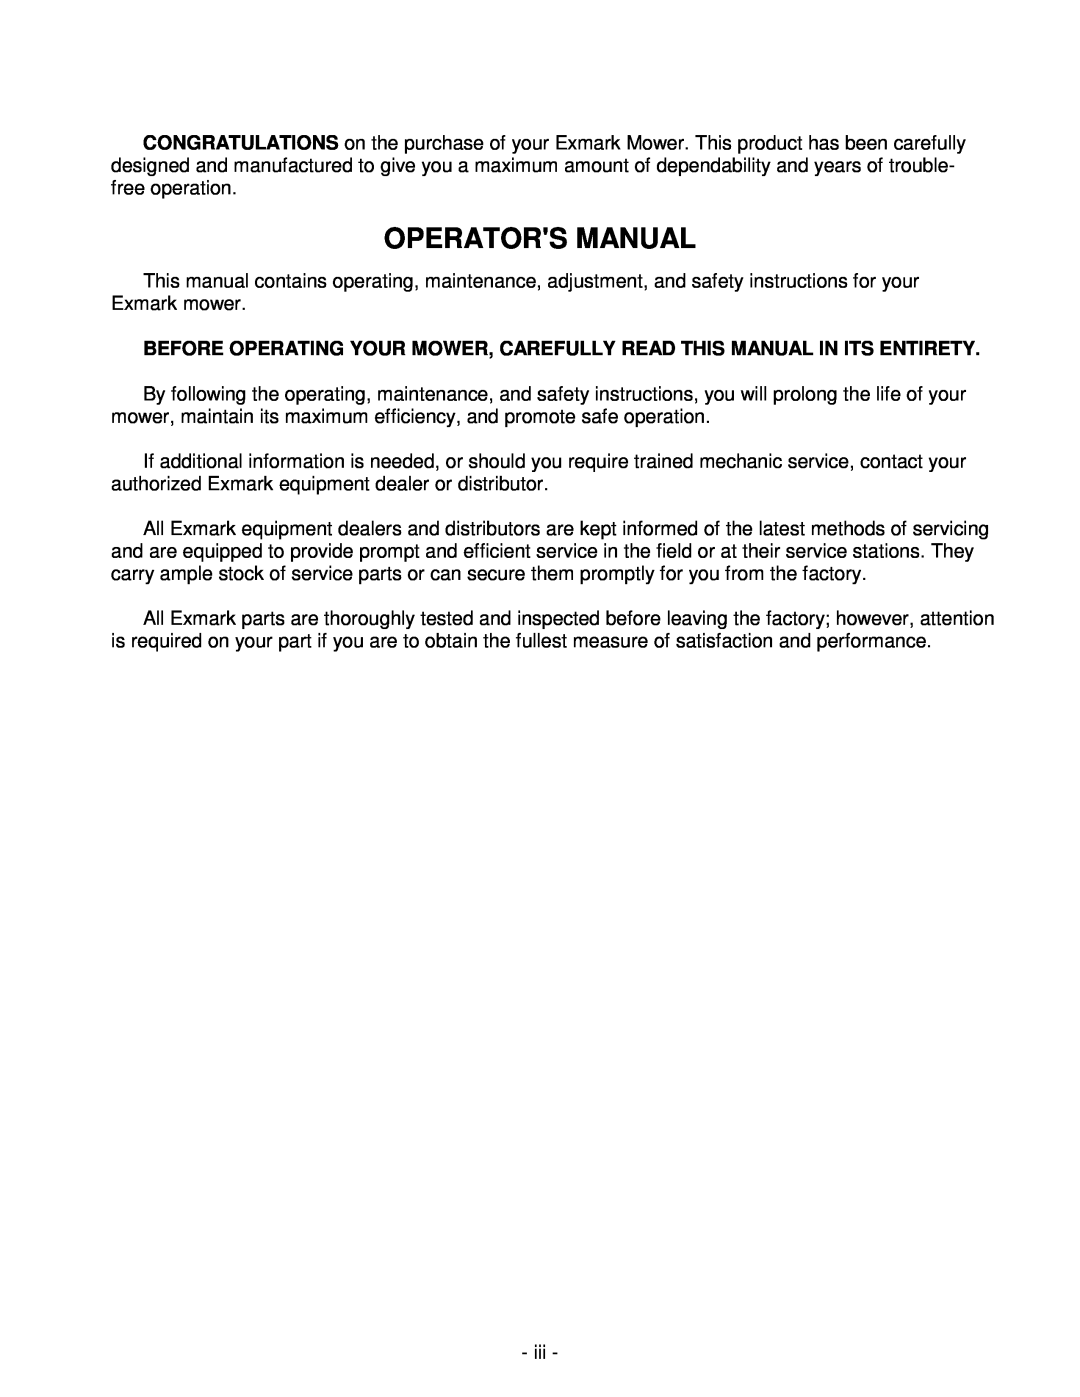 Honda Power Equipment metro 21 manual Operators Manual 